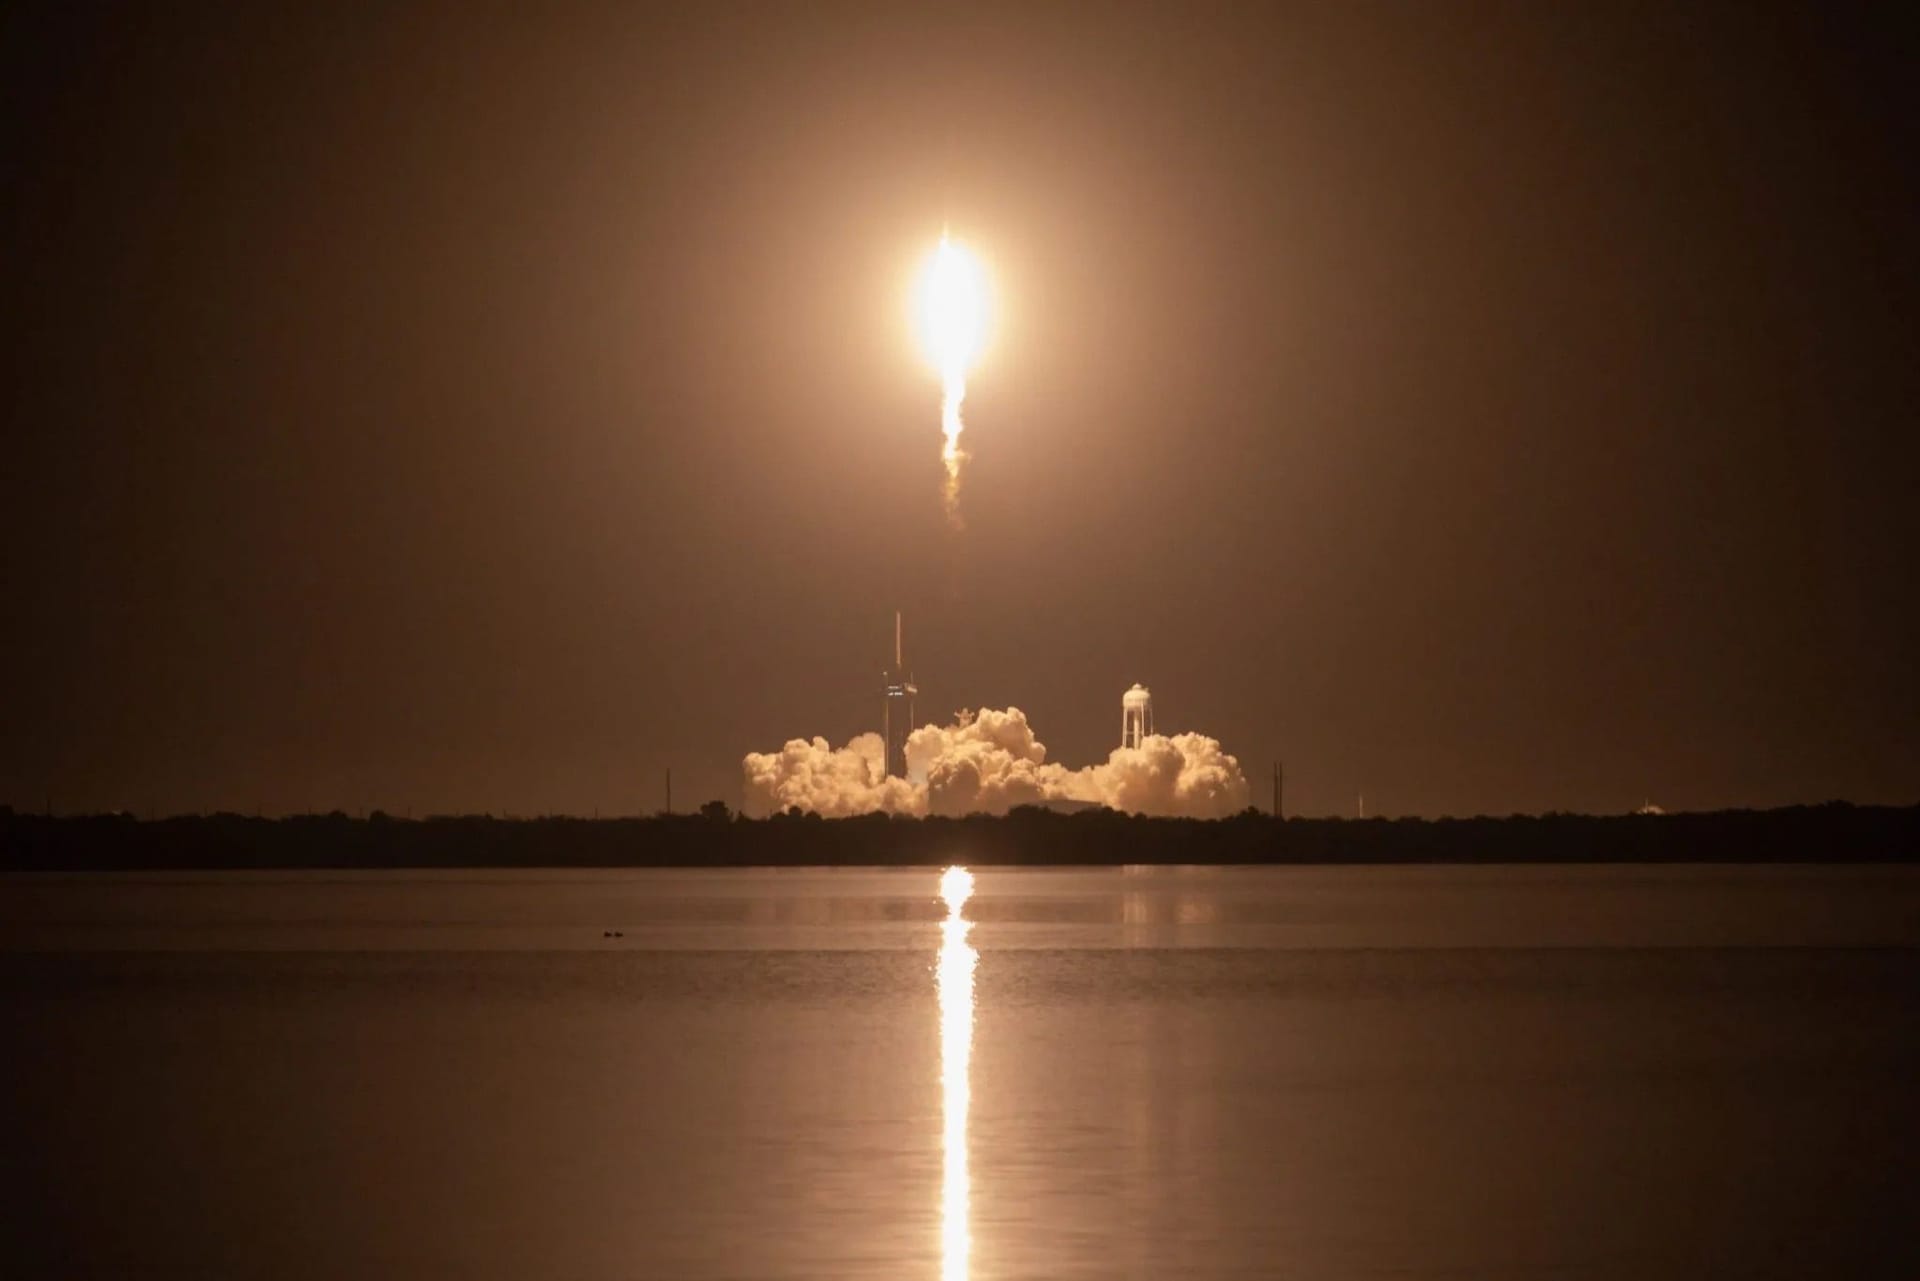 Die "Crew 3"-Mission, zu der Matthias Maurer gehörte, startete am 11. November 2021 vom Kennedy Space Center in Florida. Eine "Falcon 9"-Rakete des US-Unternehmens SpaceX brachte die Astronauten ins All.